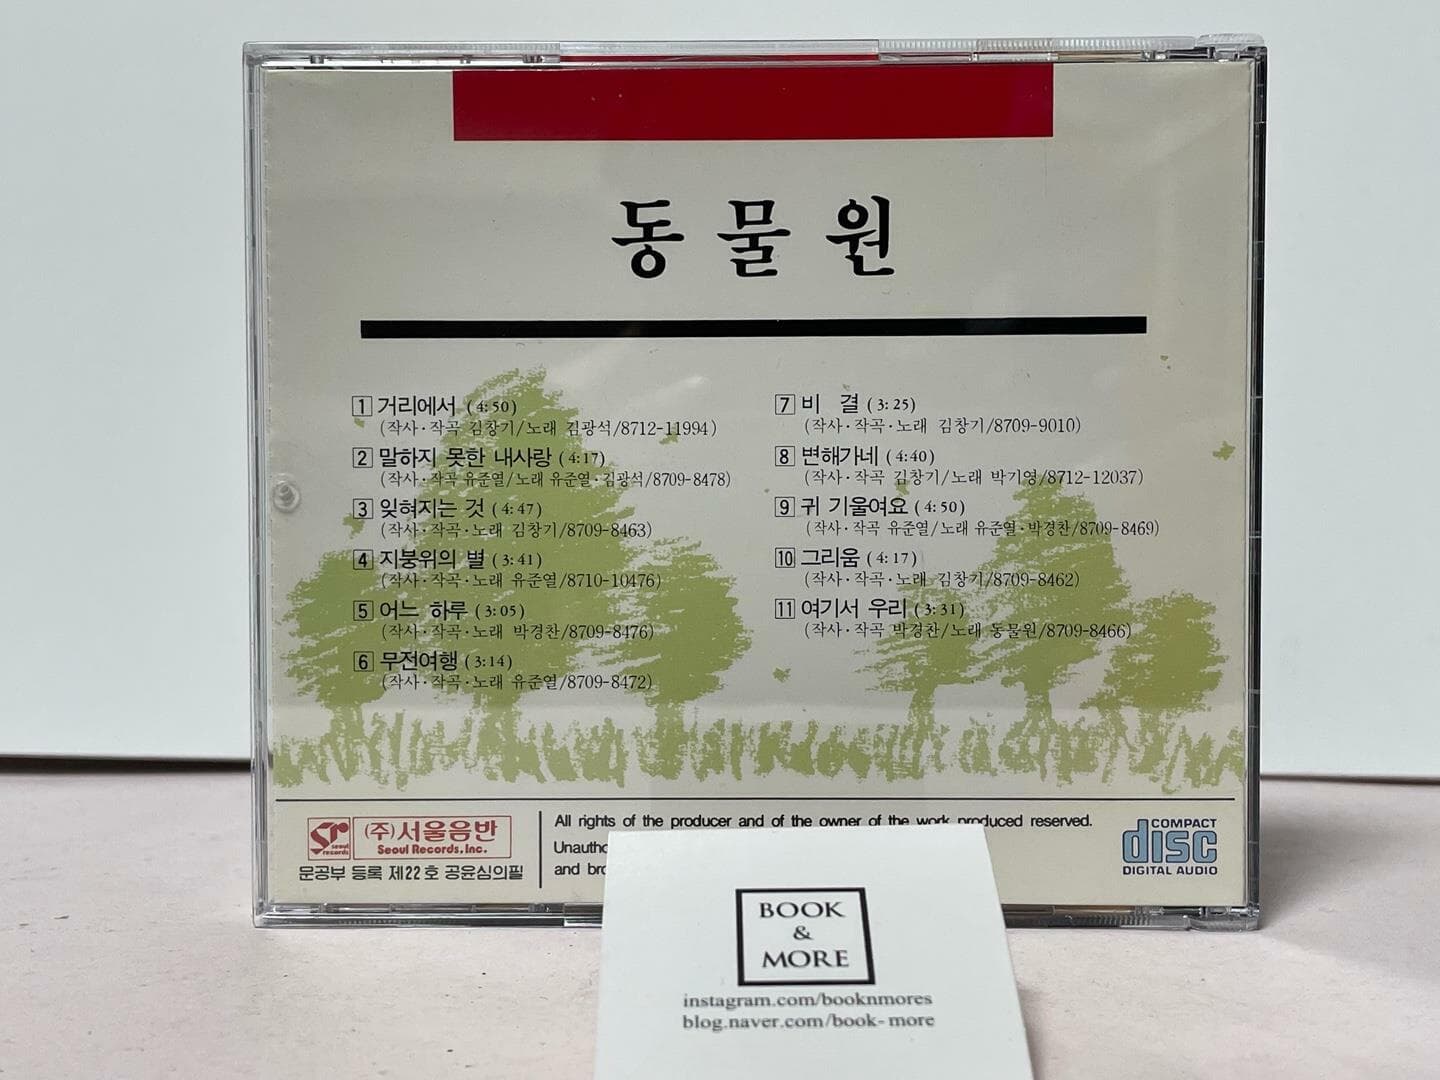 (CD) 동물원 1집 거리에서, 변해가네 / 서울음반 / 상태 : 상